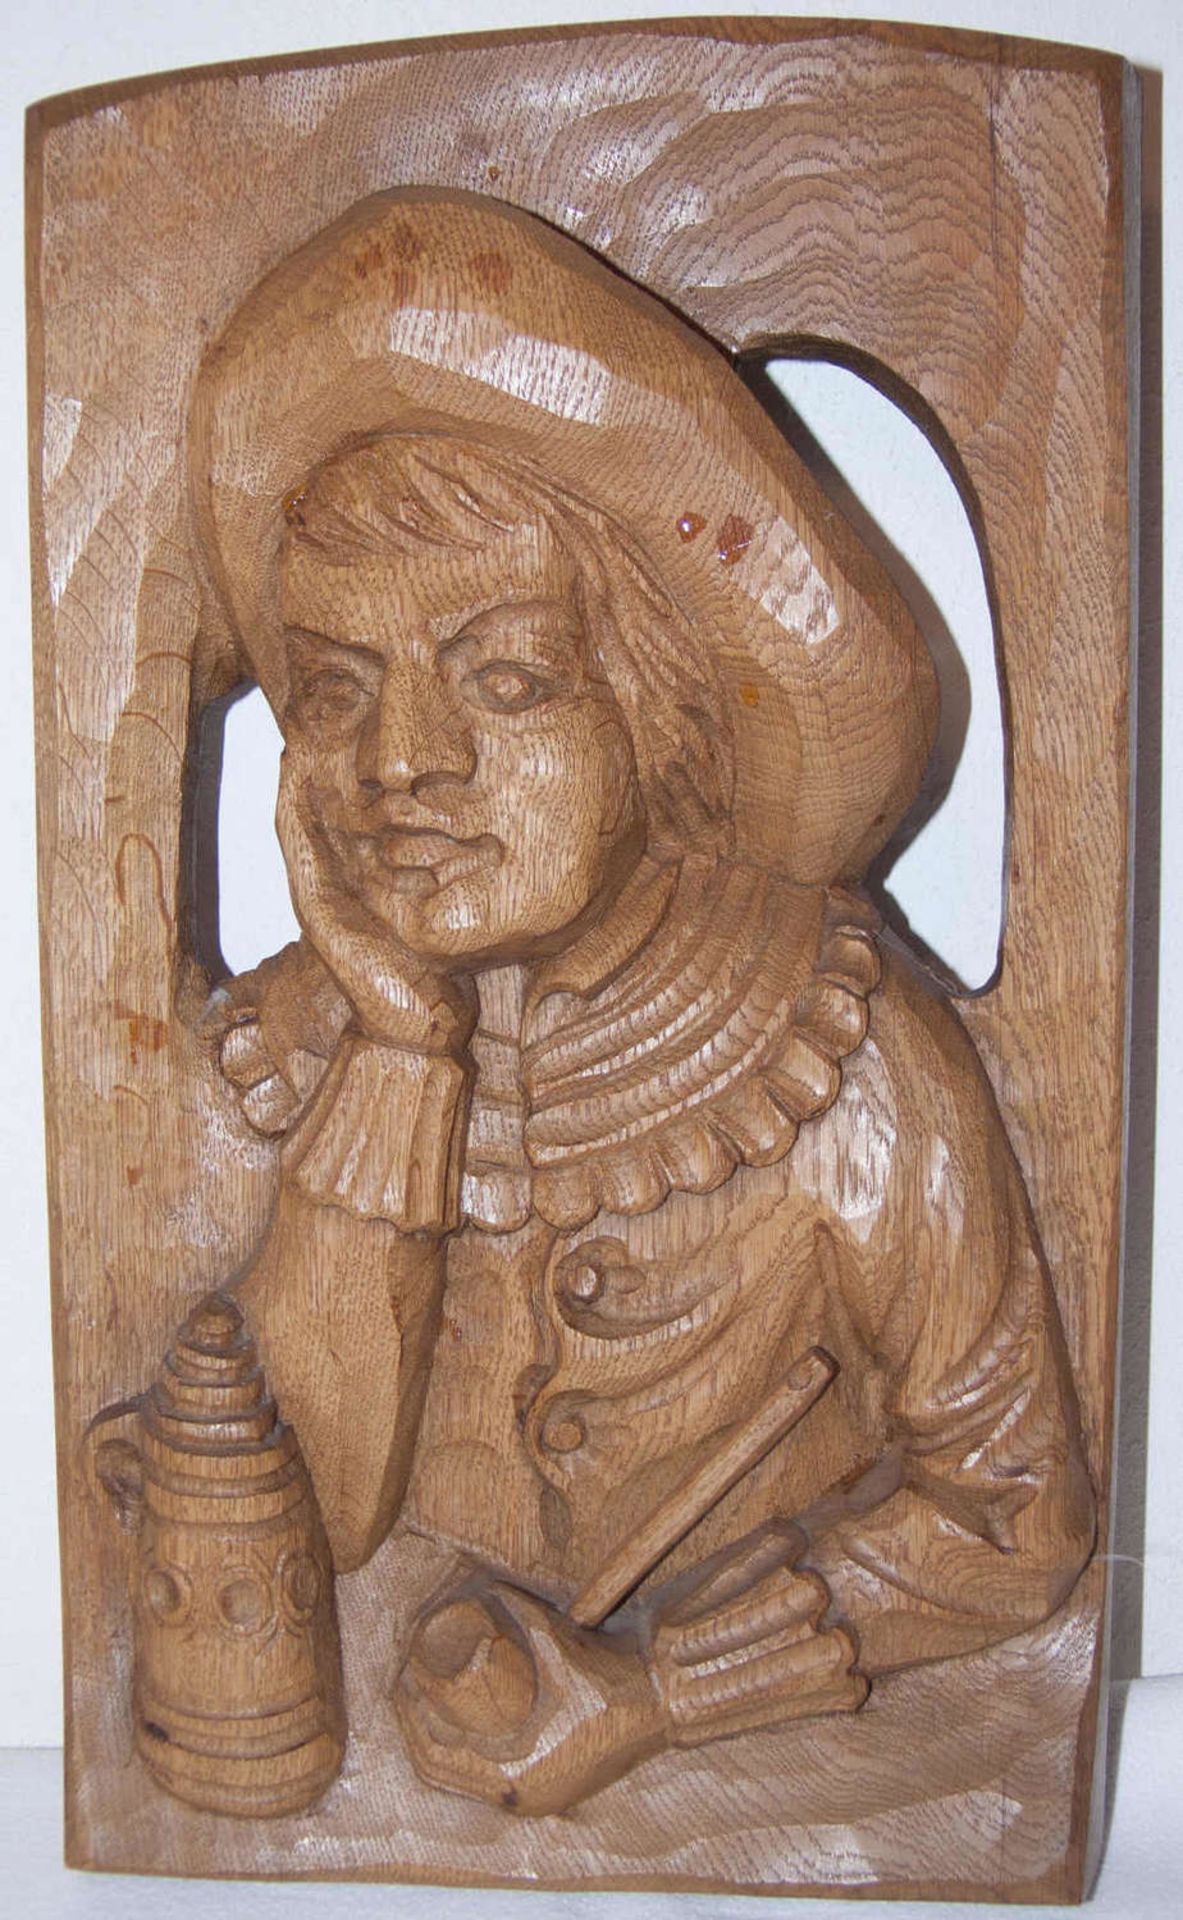 Holz - Wand - Relief "Melancholischer Zecher". Handgeschnitzt. Maße: ca. 39,5 cm x ca. 21,5 cm. Sehr